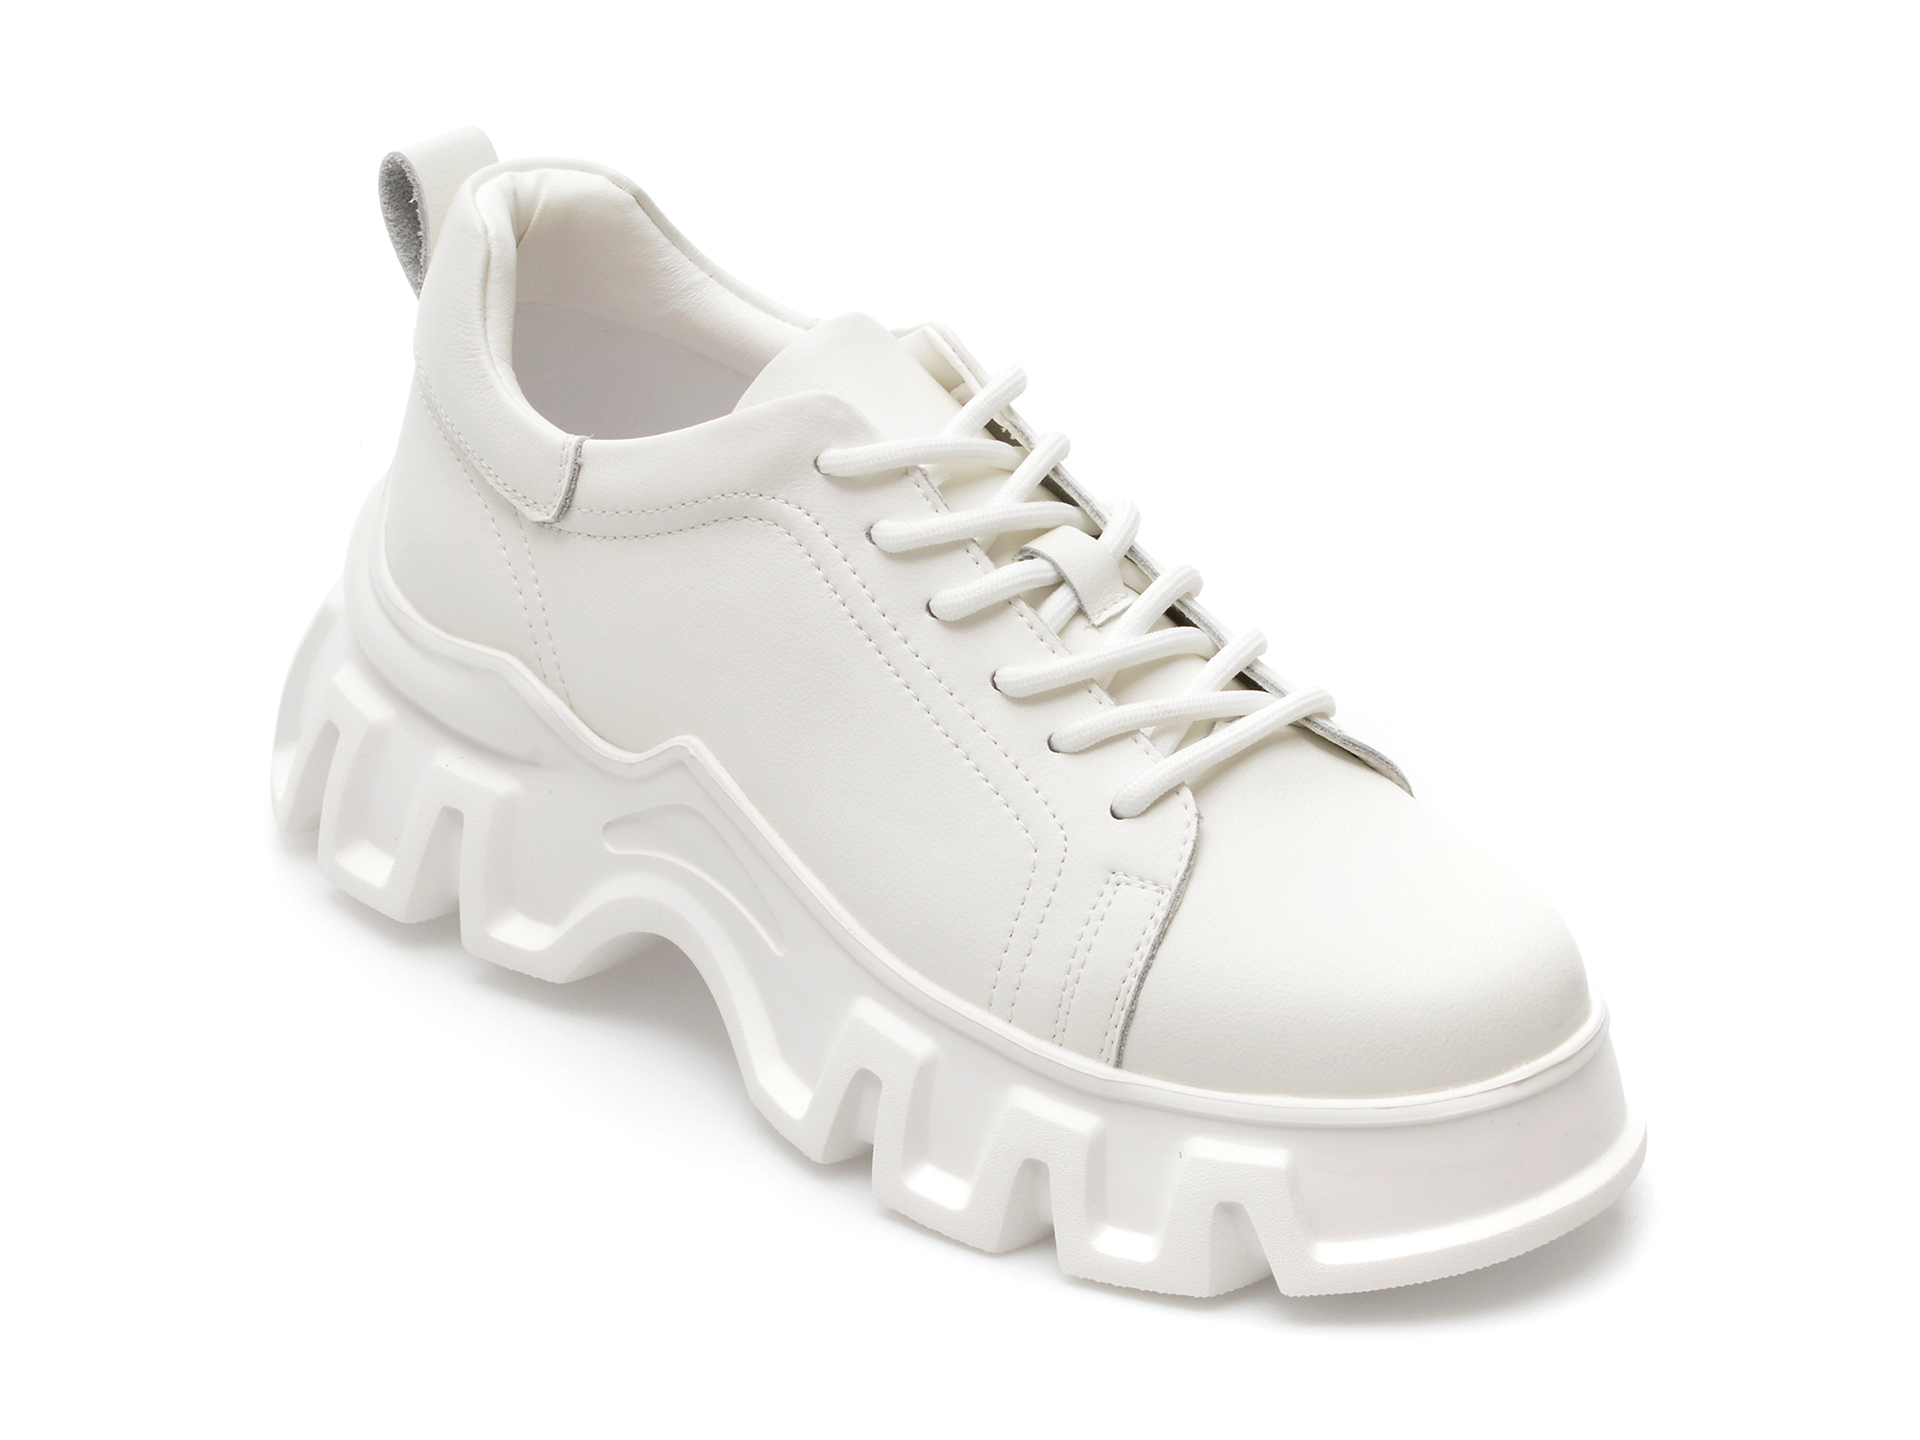 Pantofi GRYXX albi, 6632, din piele naturala